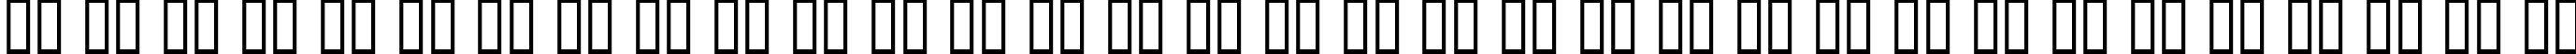 Пример написания русского алфавита шрифтом Bastard